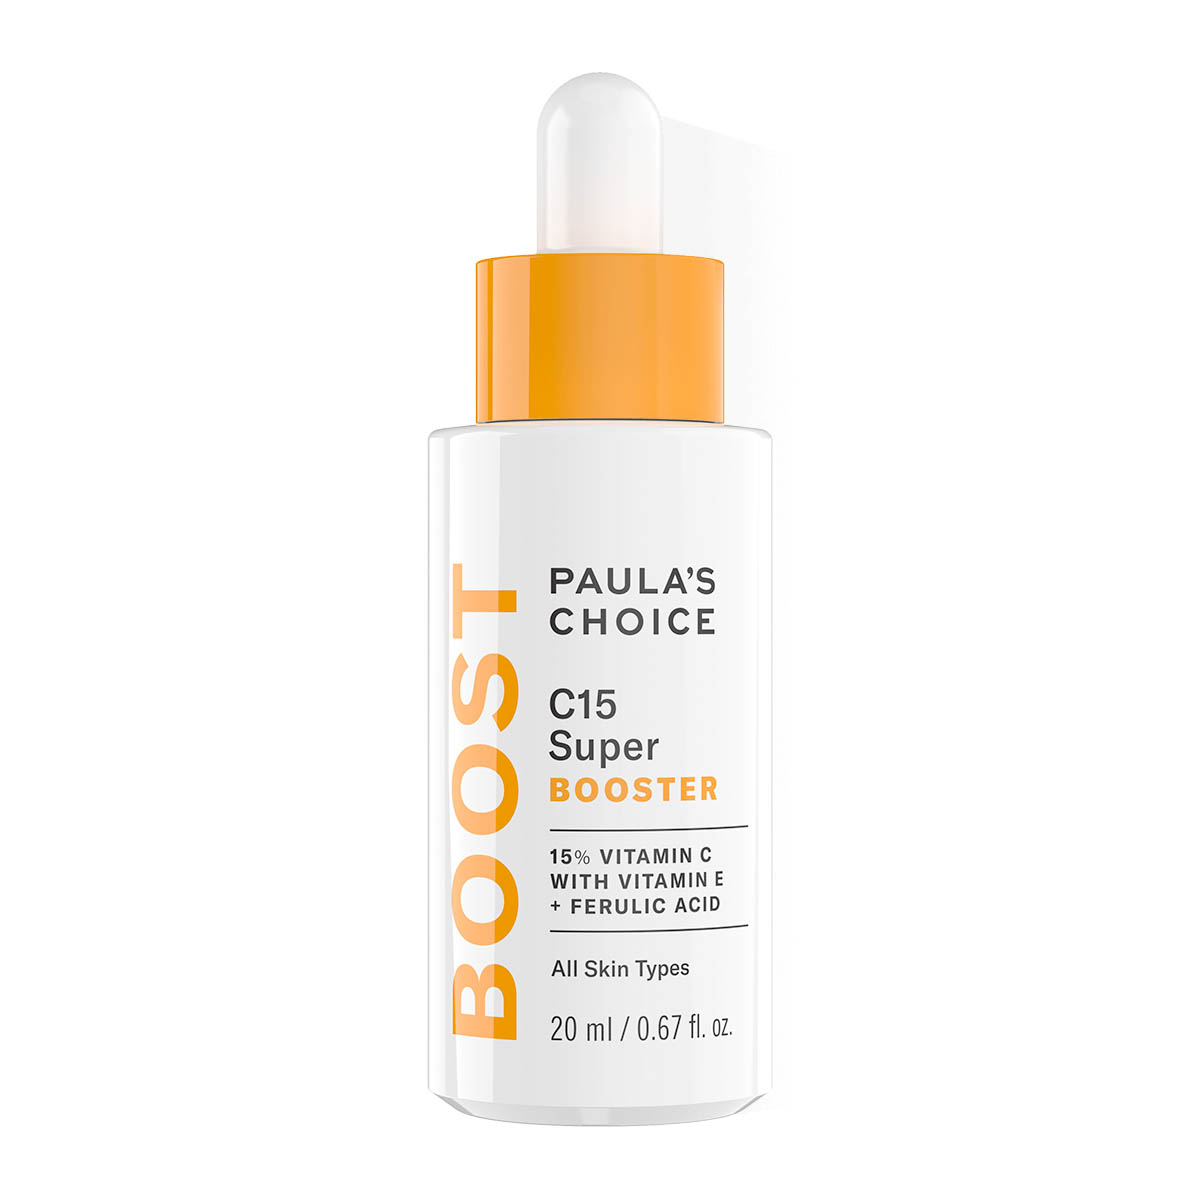 PAULA'S CHOICE C15 Super Booster C E Ferulic Serum Dupe Antioxidantien Anti-Aging kaufen bestellen Vergleich Rabattcode billiger Gutschein Code